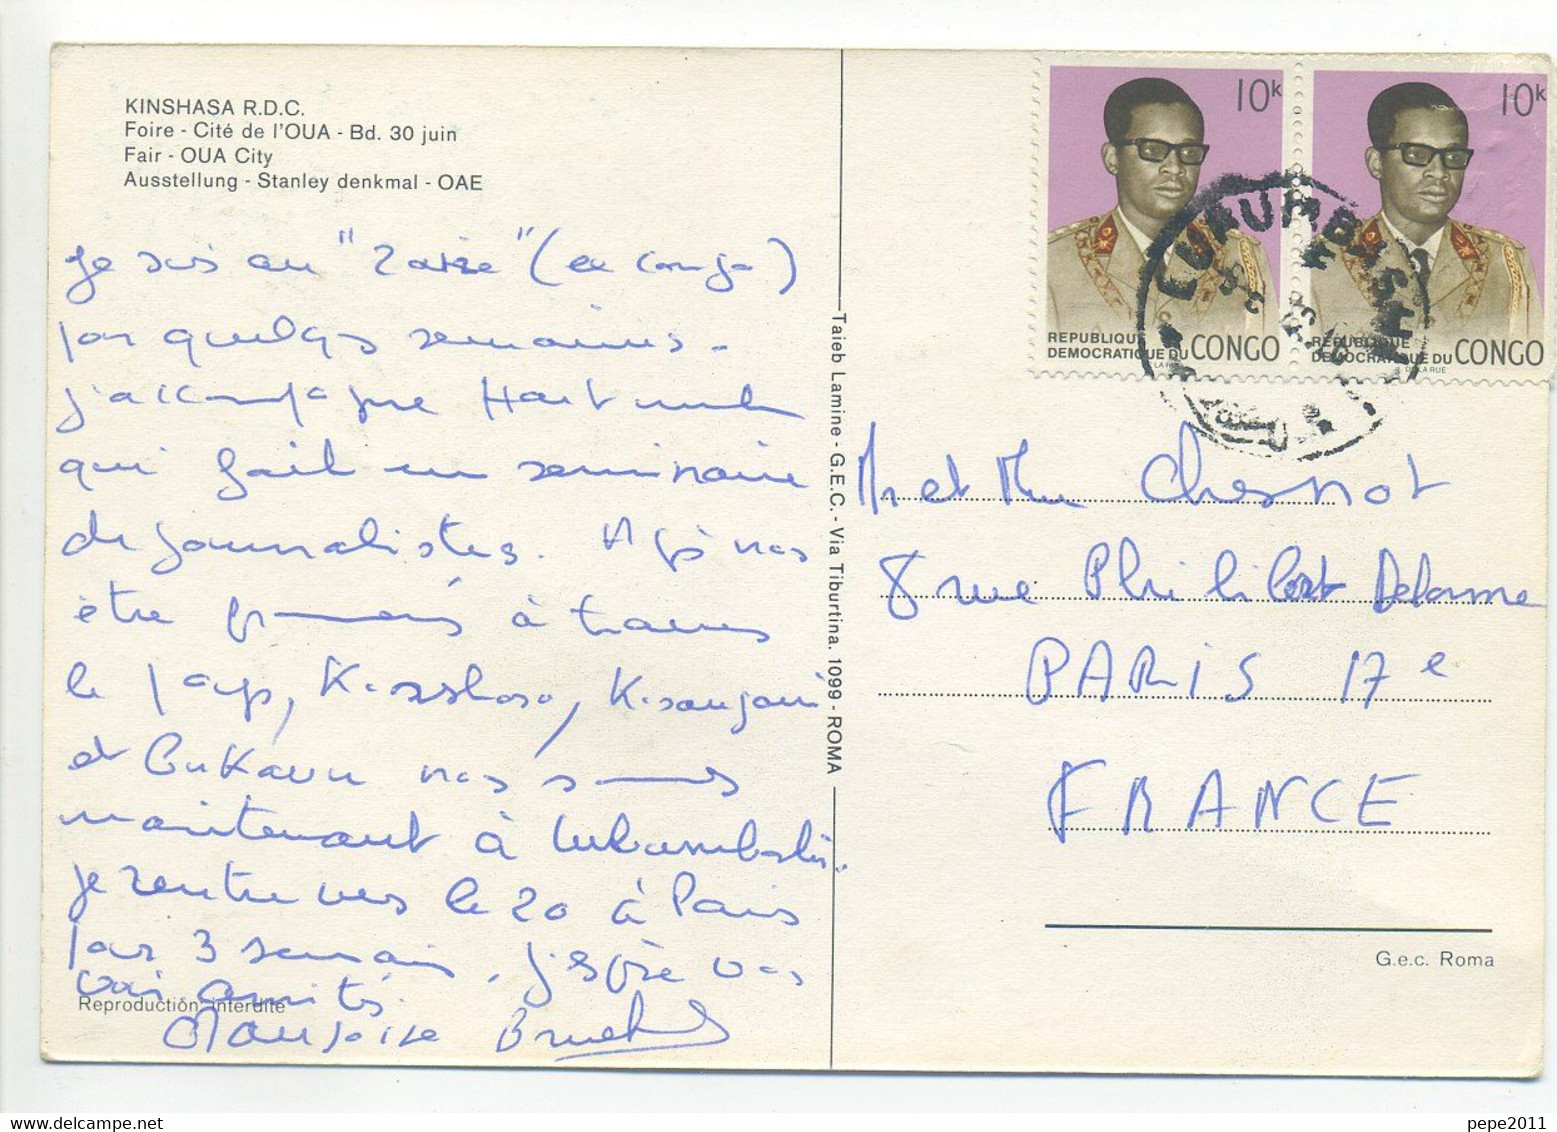 CPSM Multivues - Congo - Souvenir De Kinshasa (ex Zaire) - R.D.C. - Foire, Cité De L'OUA - Bd 30 Juin - Kinshasa - Leopoldville (Leopoldstadt)